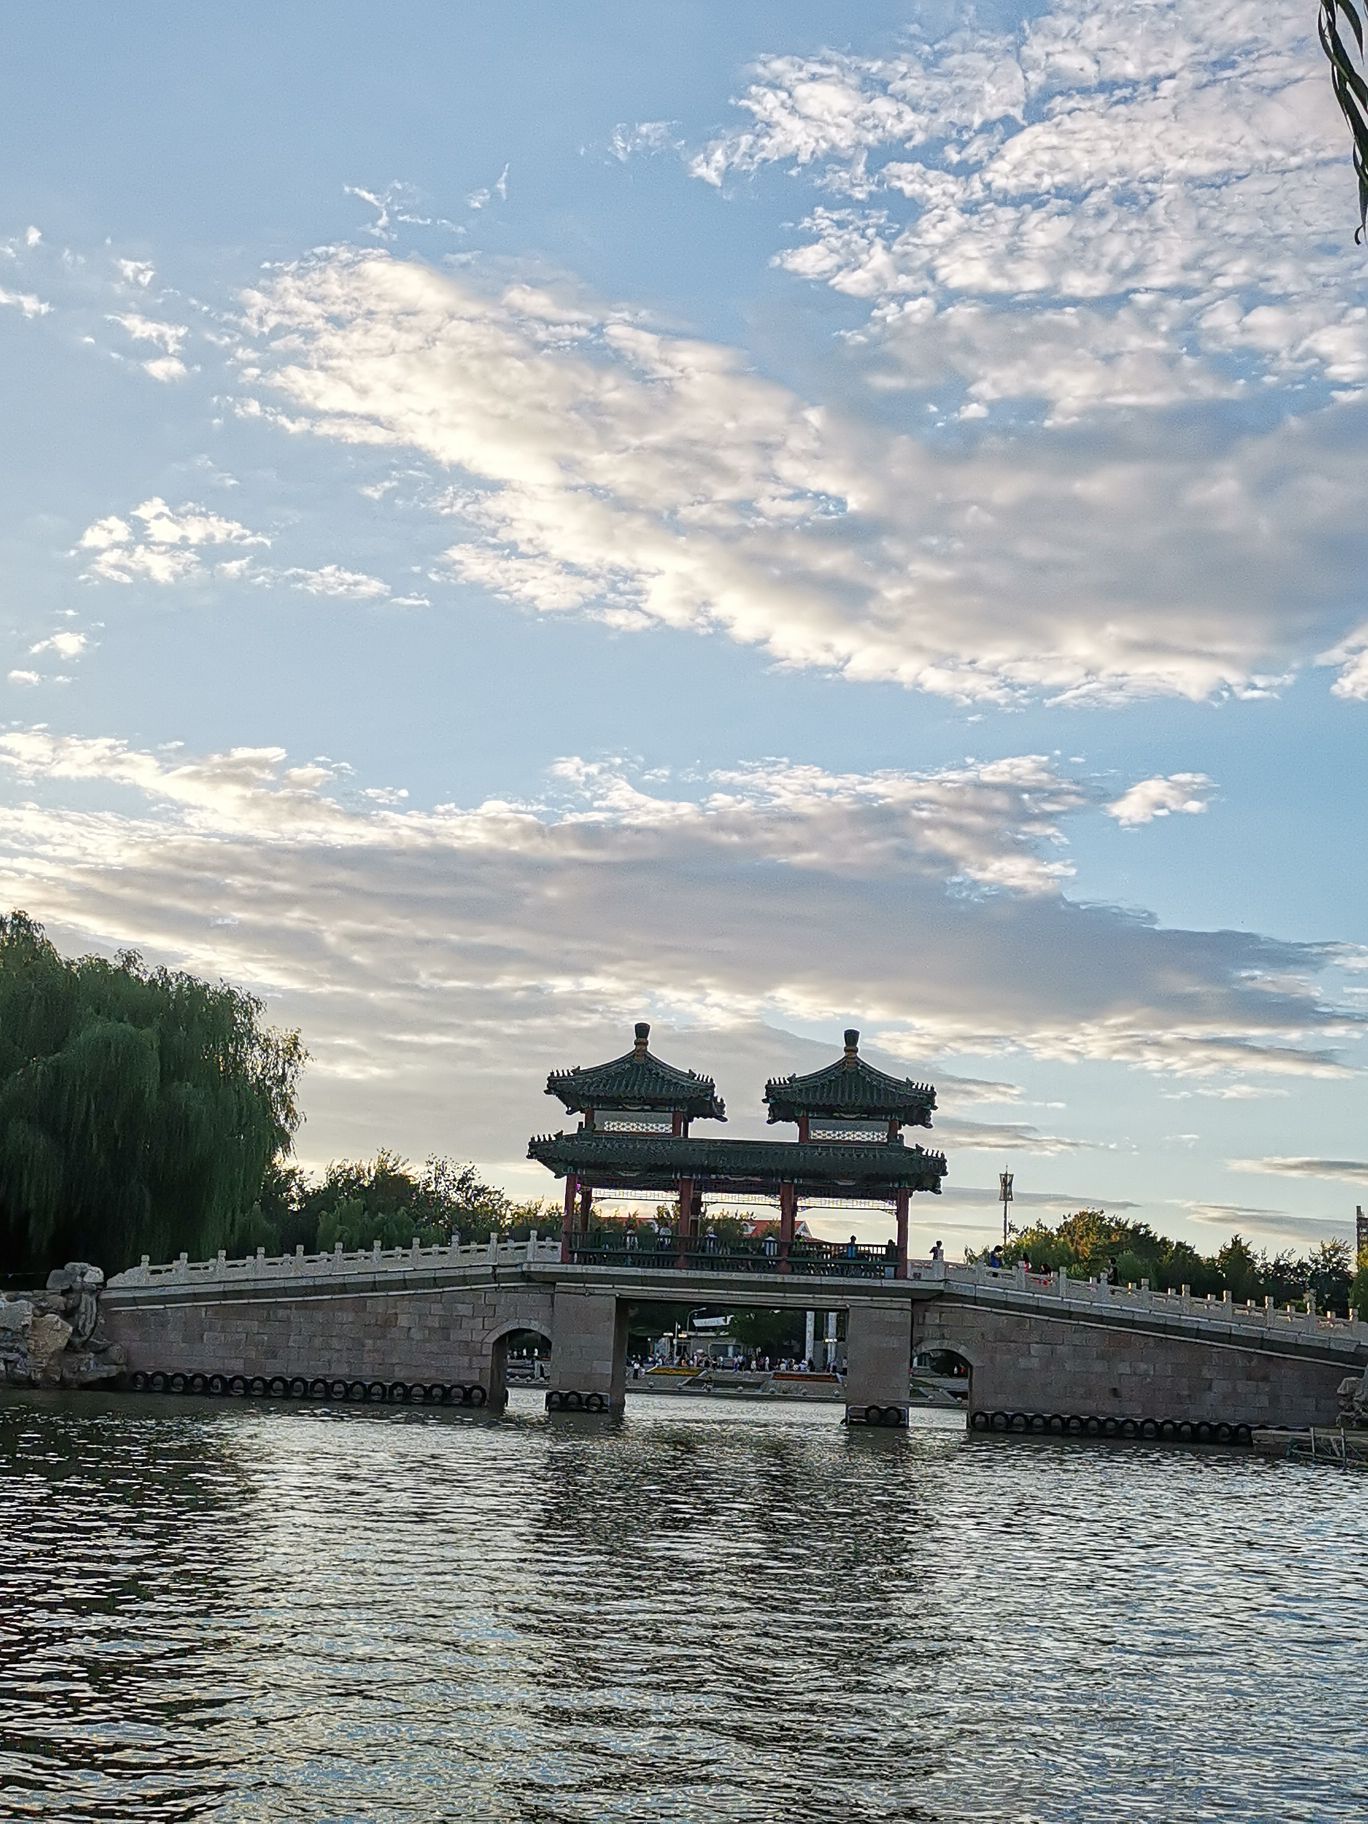 北京龙潭湖公园-中关村在线摄影论坛